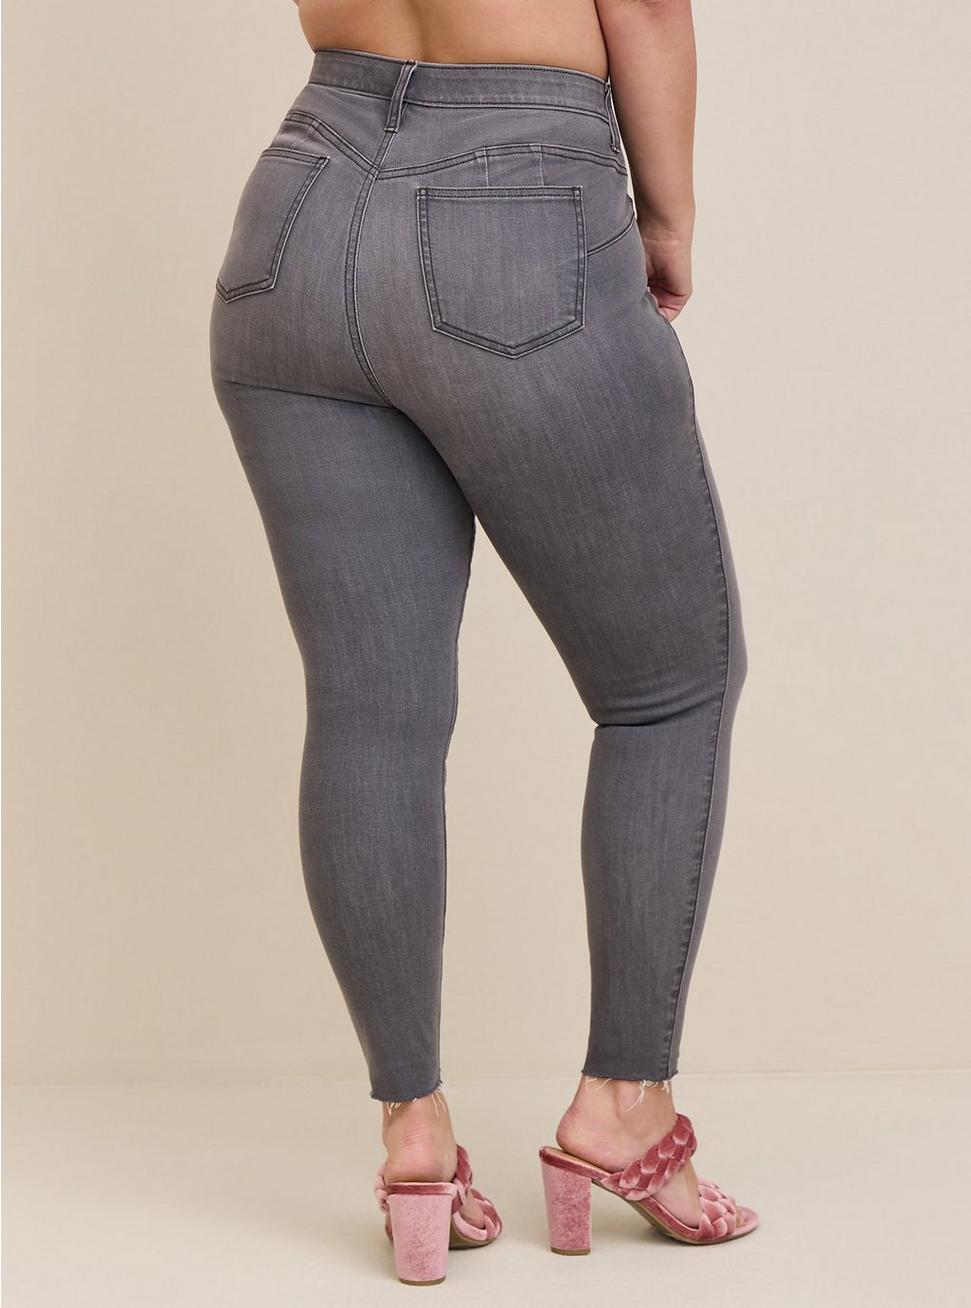 Bombshell Skinny Premium Stretch High-Rise Jean, CELESTIAL, alternate